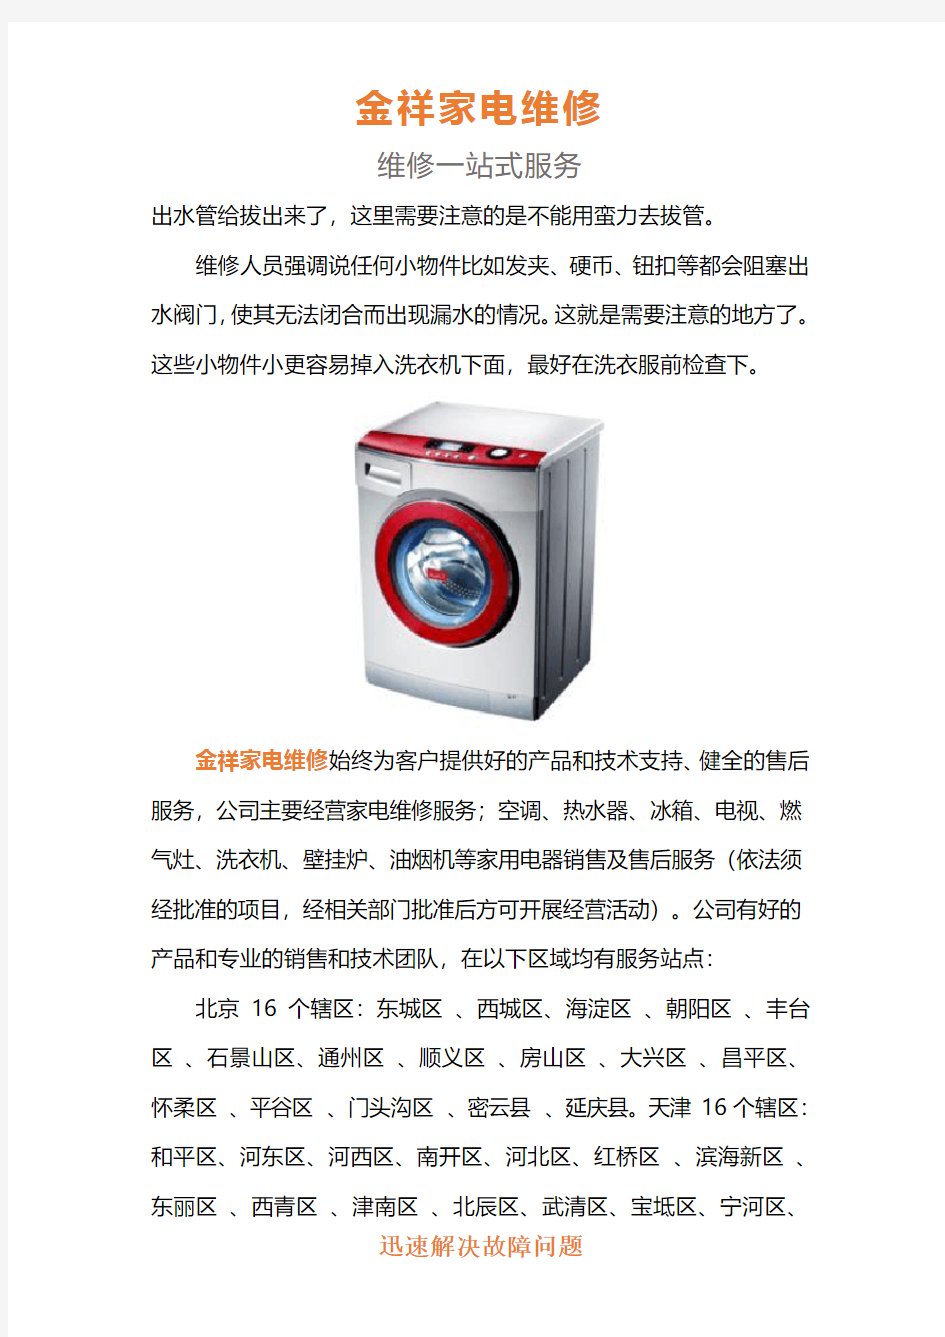 北京海尔洗衣机售后维修电话